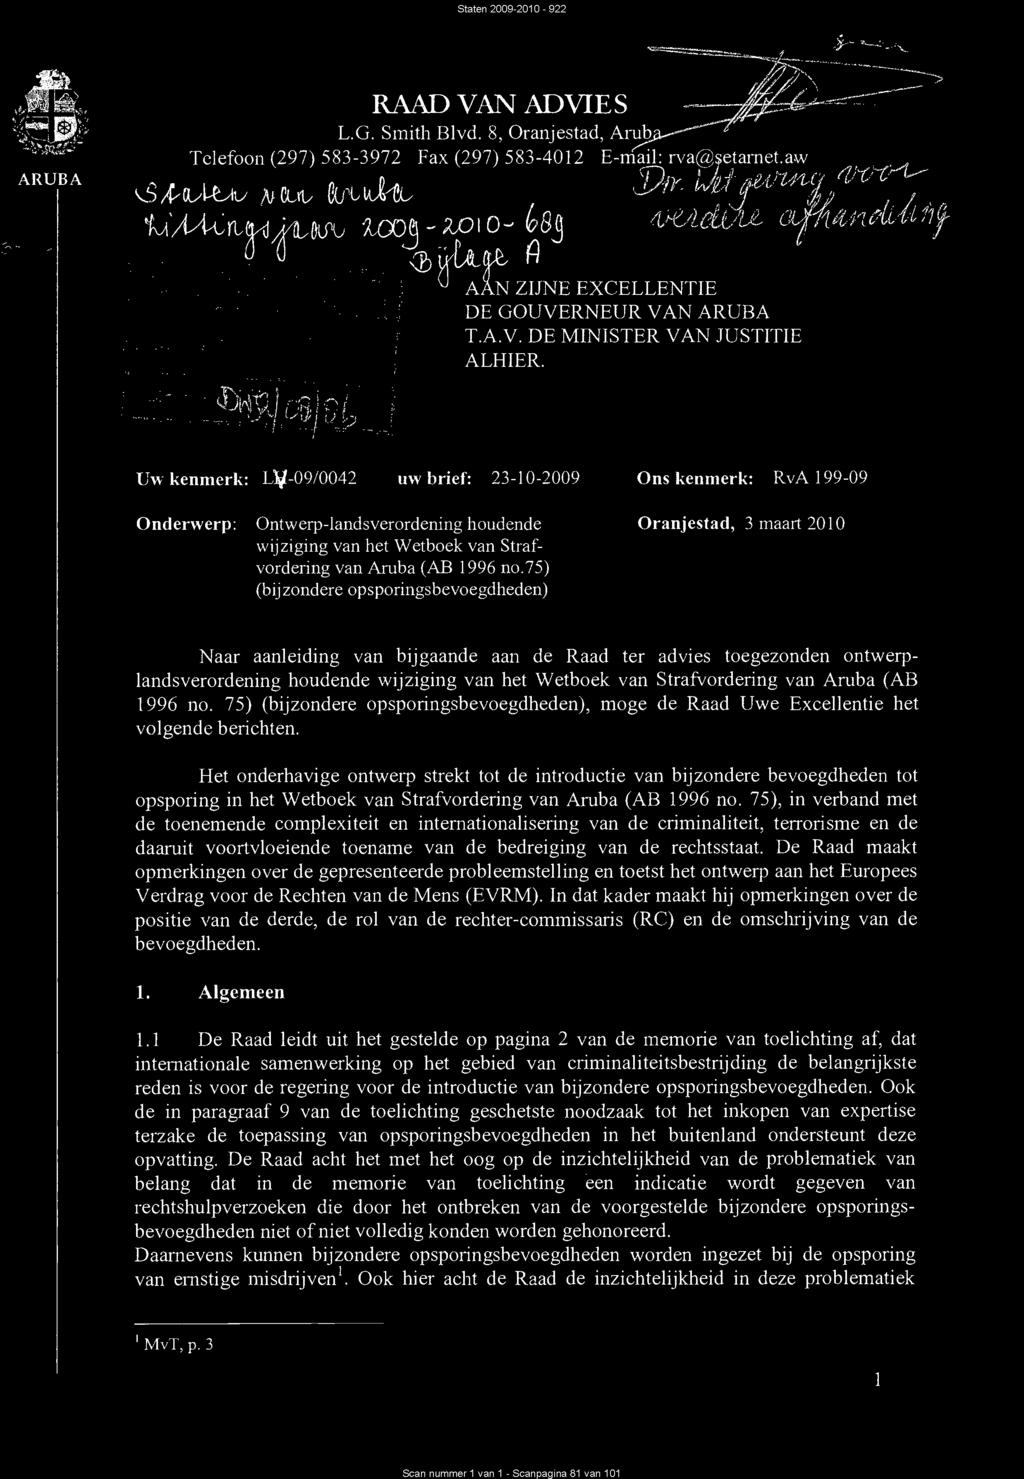 1411eli,41 1"\,' CjH Uw kenmerk: LV-09/0042 uw brief: 23-10-2009 Ons kenmerk: RvA 199-09 Onderwerp: Ontwerp-landsverordening houdende wijziging van het Wetboek van Strafvordering van Aruba (AB 1996